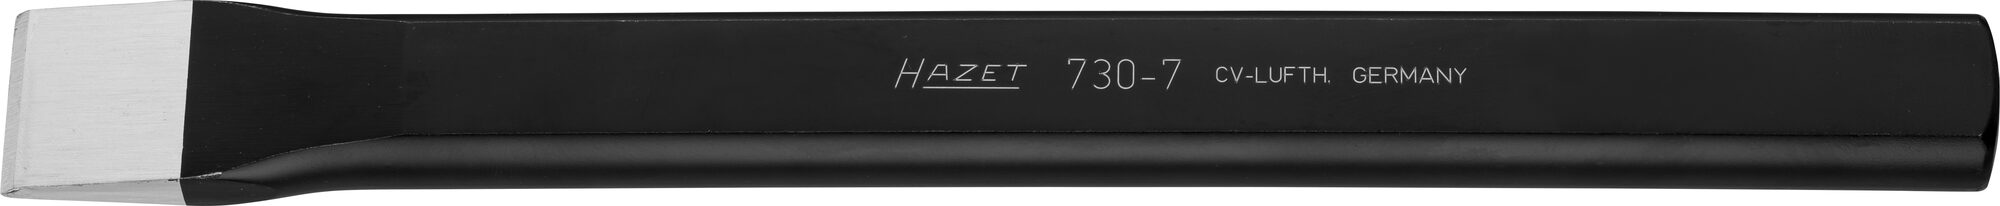 HAZET Flachmeißel 730-7 · 25 mm